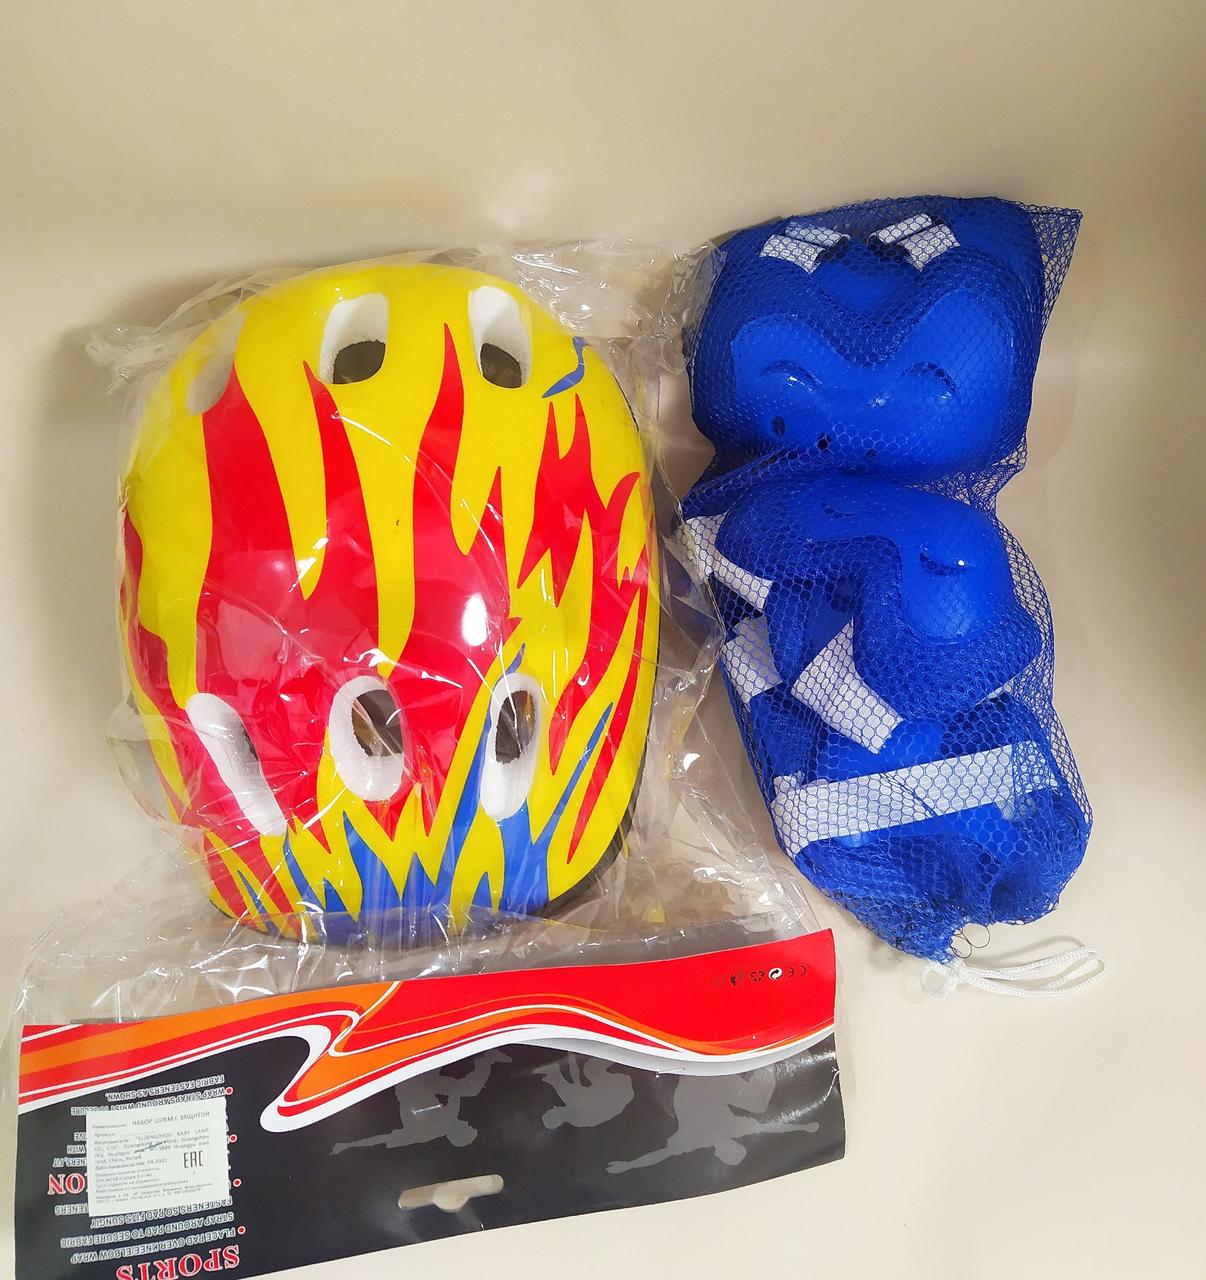 Детский комплект защитный шлем +защита для катания на роликах, велосипеде, скейт и др.